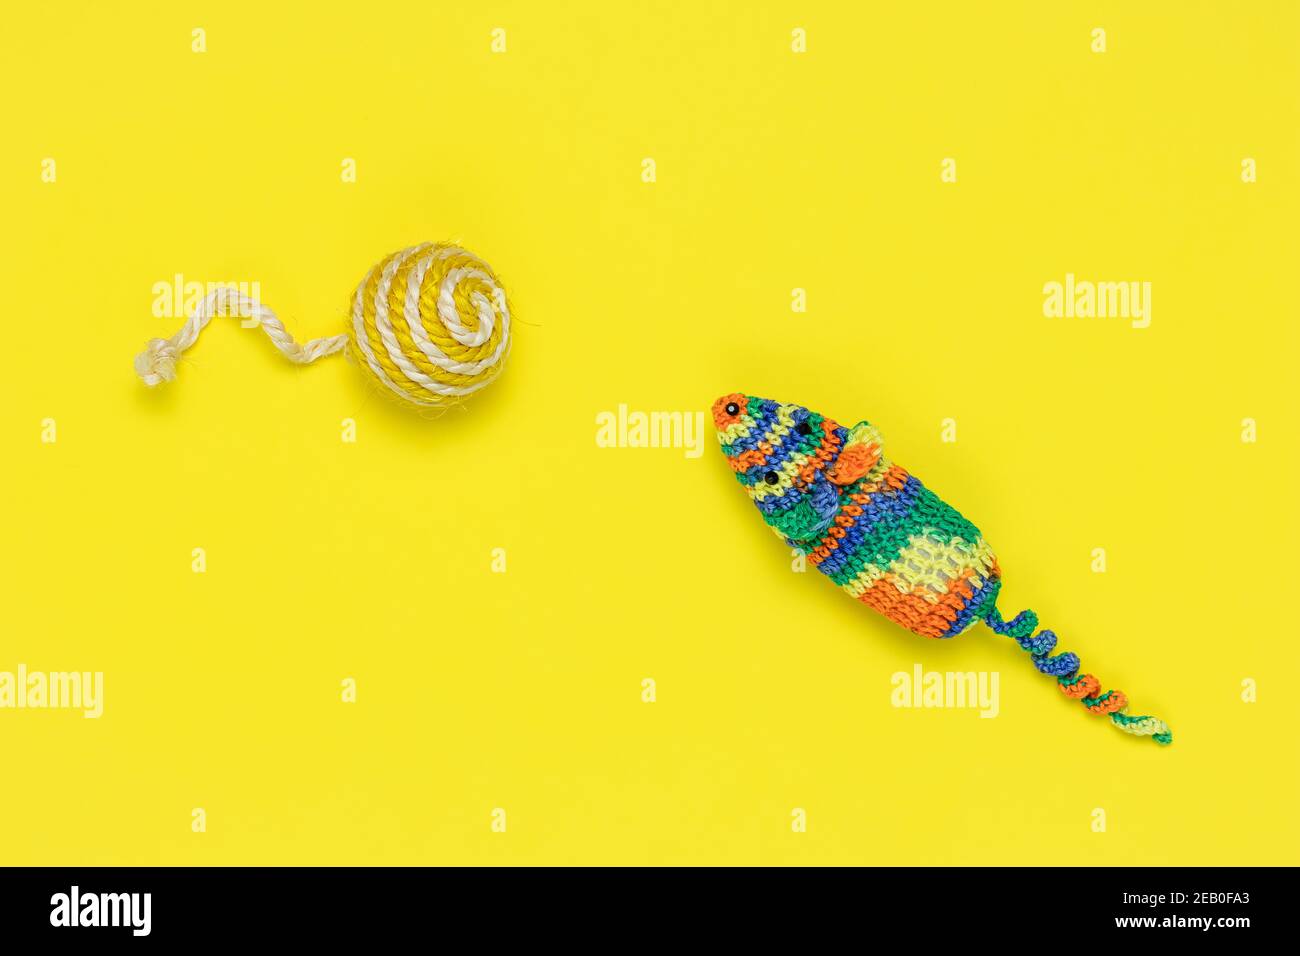 Souris et ballon artificiels pour jouer des chats sur fond jaune vif. Vue de dessus. Jouets tricotés colorés pour animaux de compagnie Banque D'Images